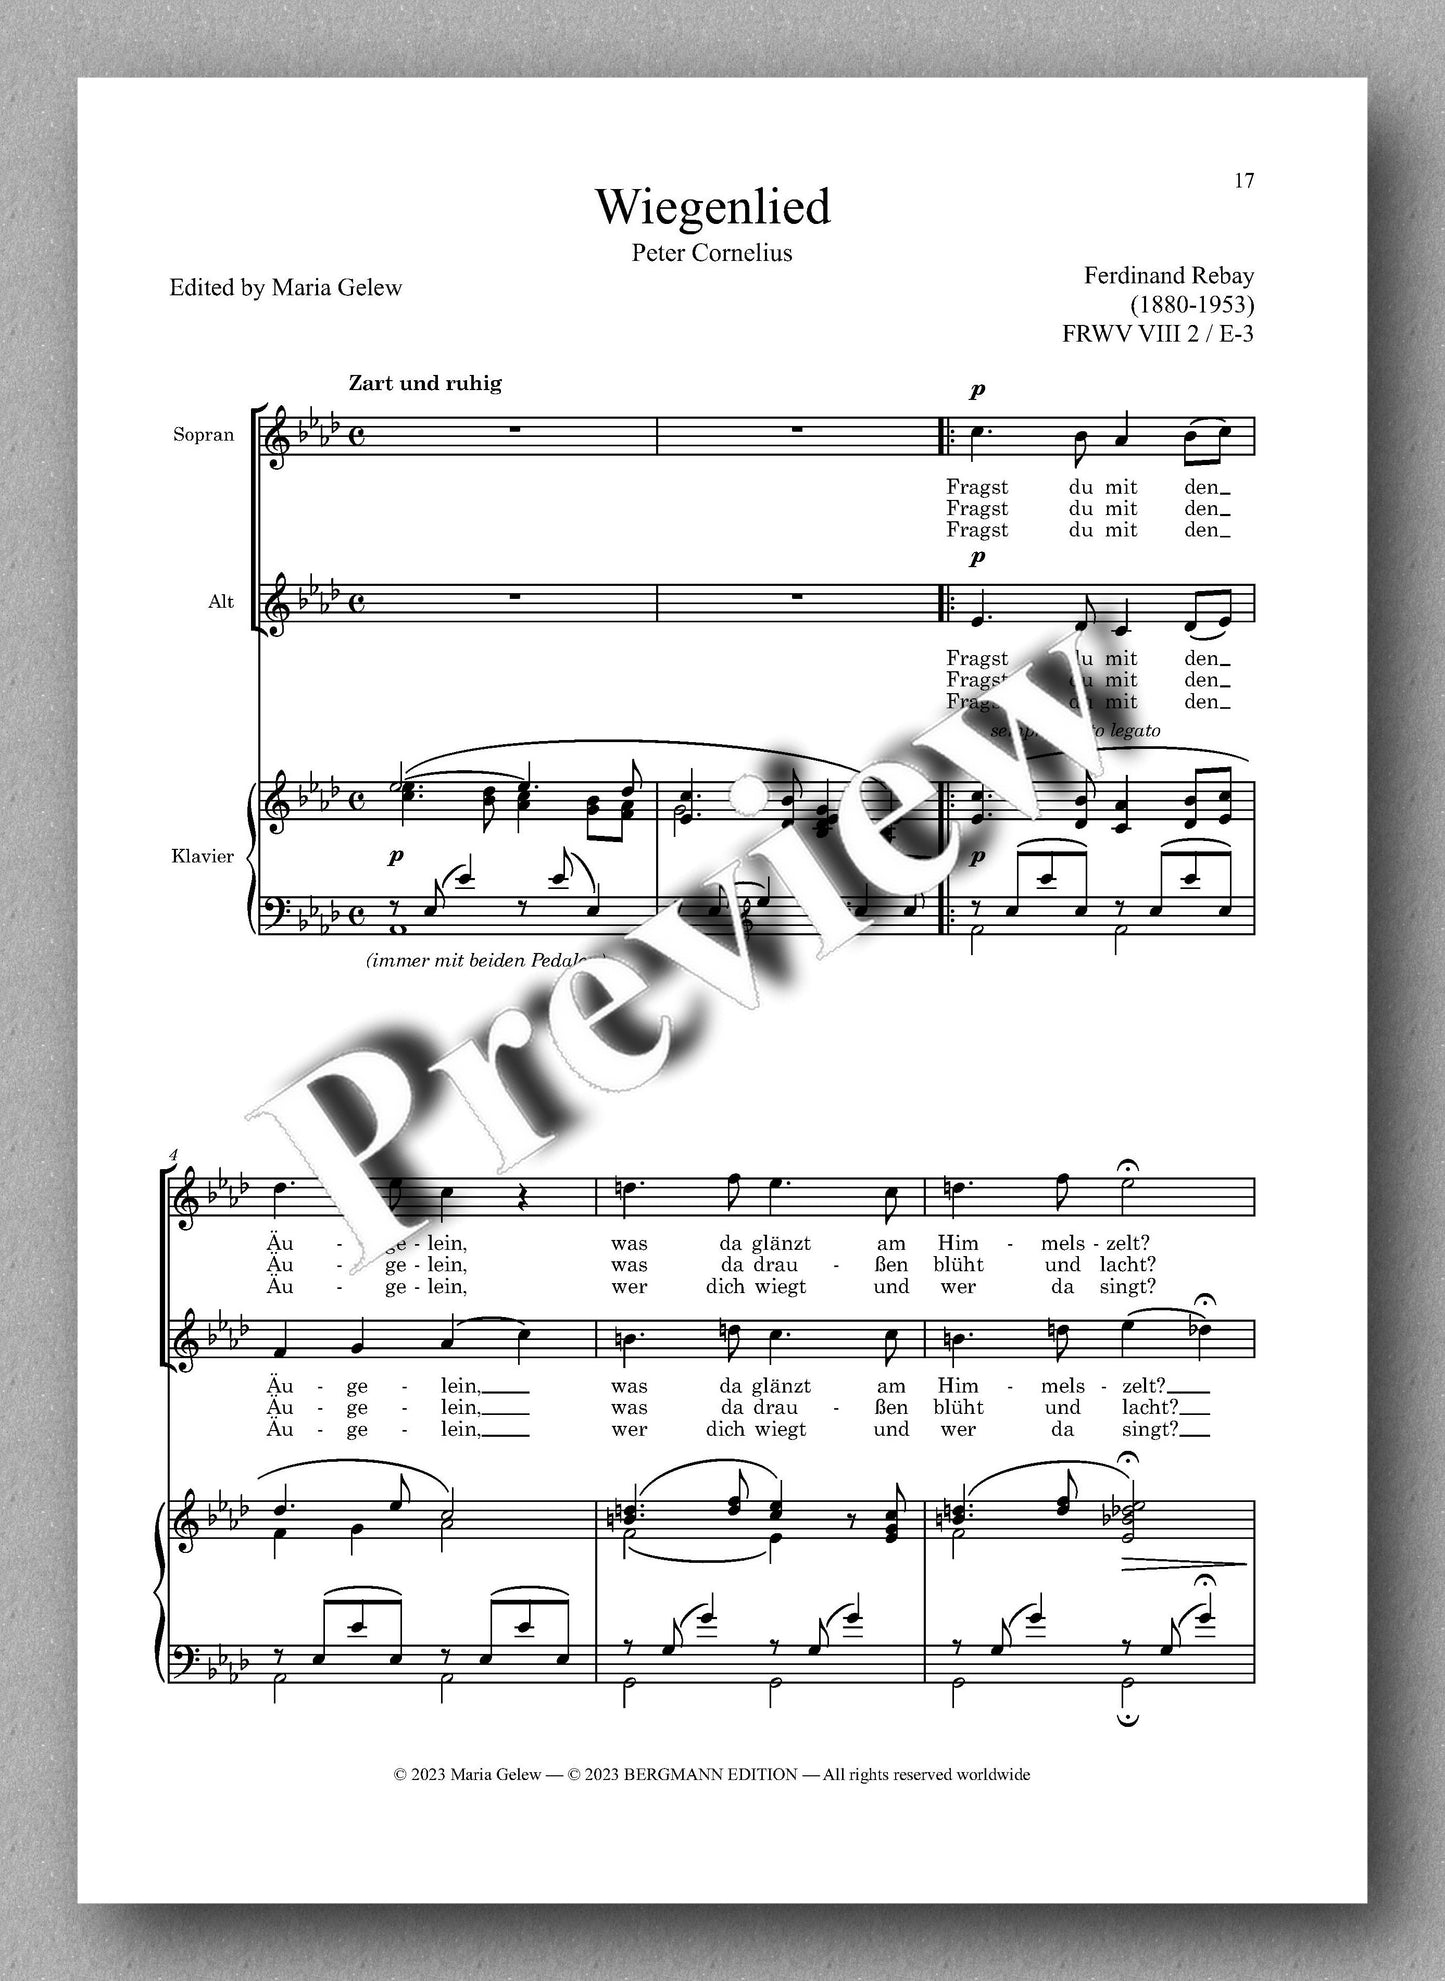 Ferdinand Rebay, Lieder für zwei Singstimmen mit Klavierbegleitung - preview of the music score 2